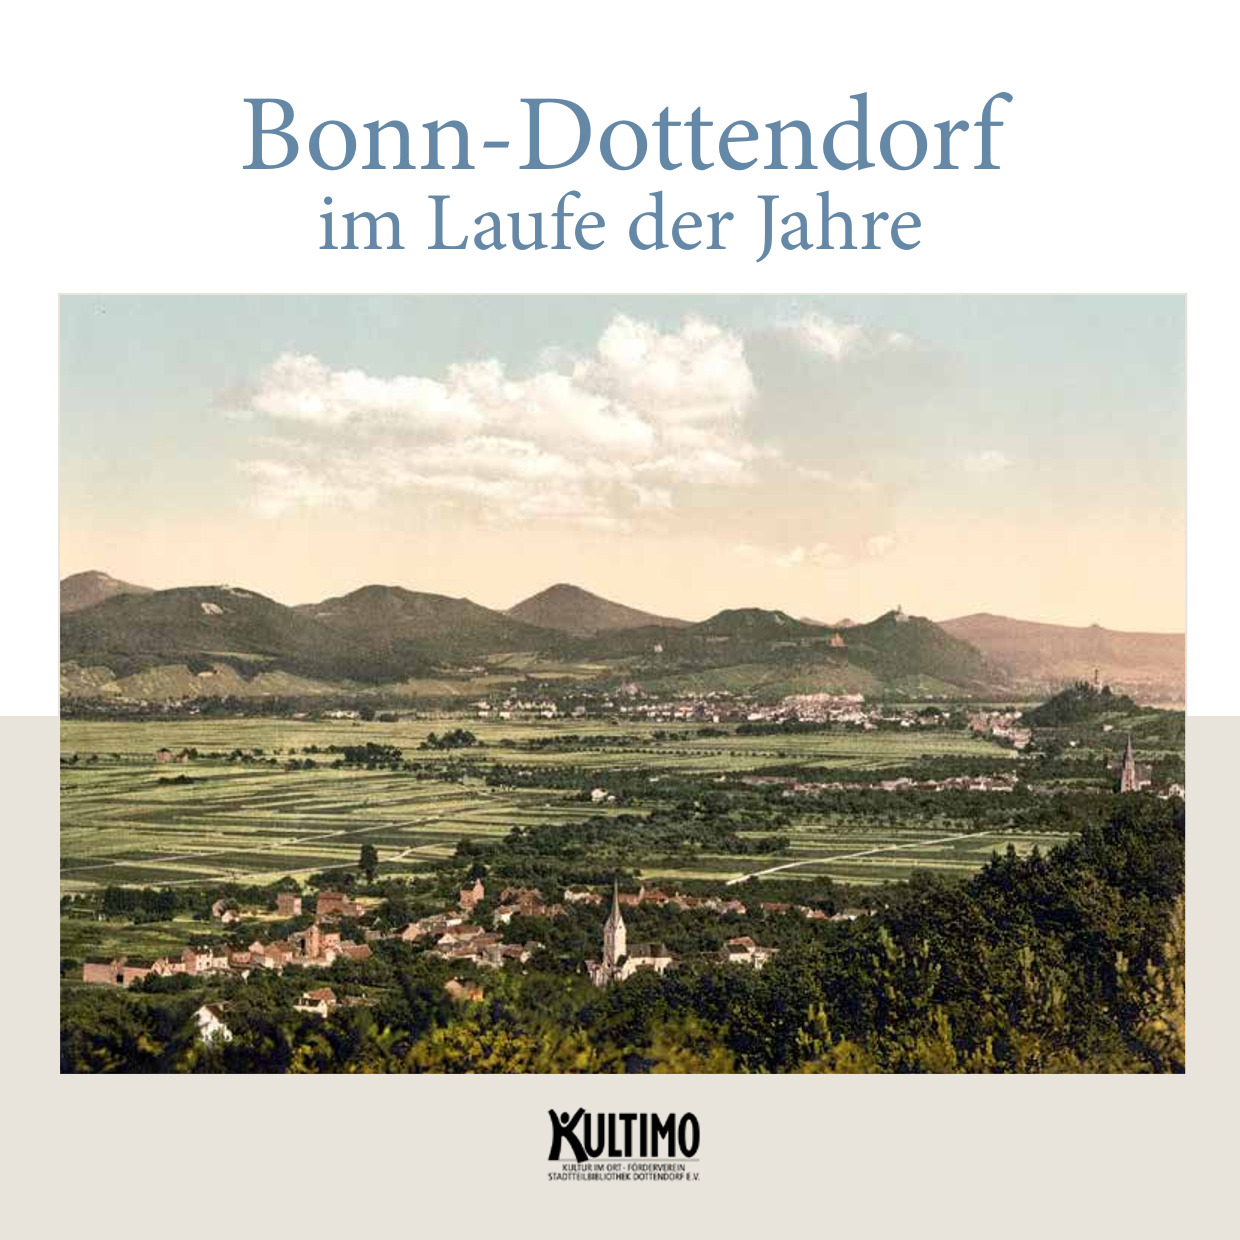 Bonn-Dottendorf im Laufe der Jahre, Publikation von Ortrud und Klaus Wichtmann, KultimO e.V. 2020